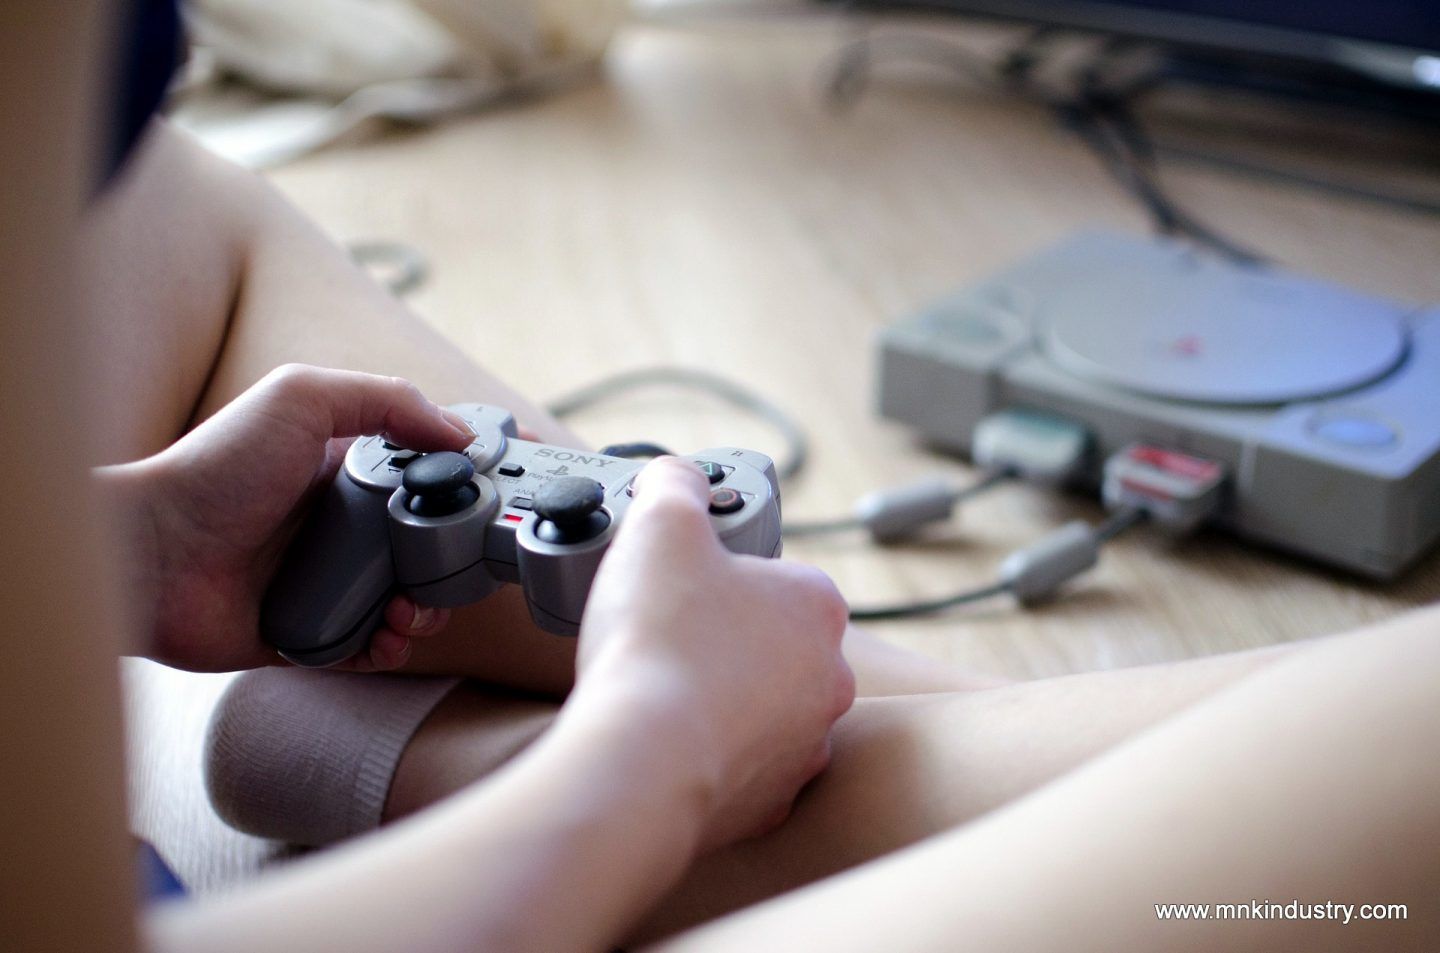 كيف يمكن لألعاب الفيديو أن تؤثّر على الرغبة الجنسية والقذف عند الرجل؟